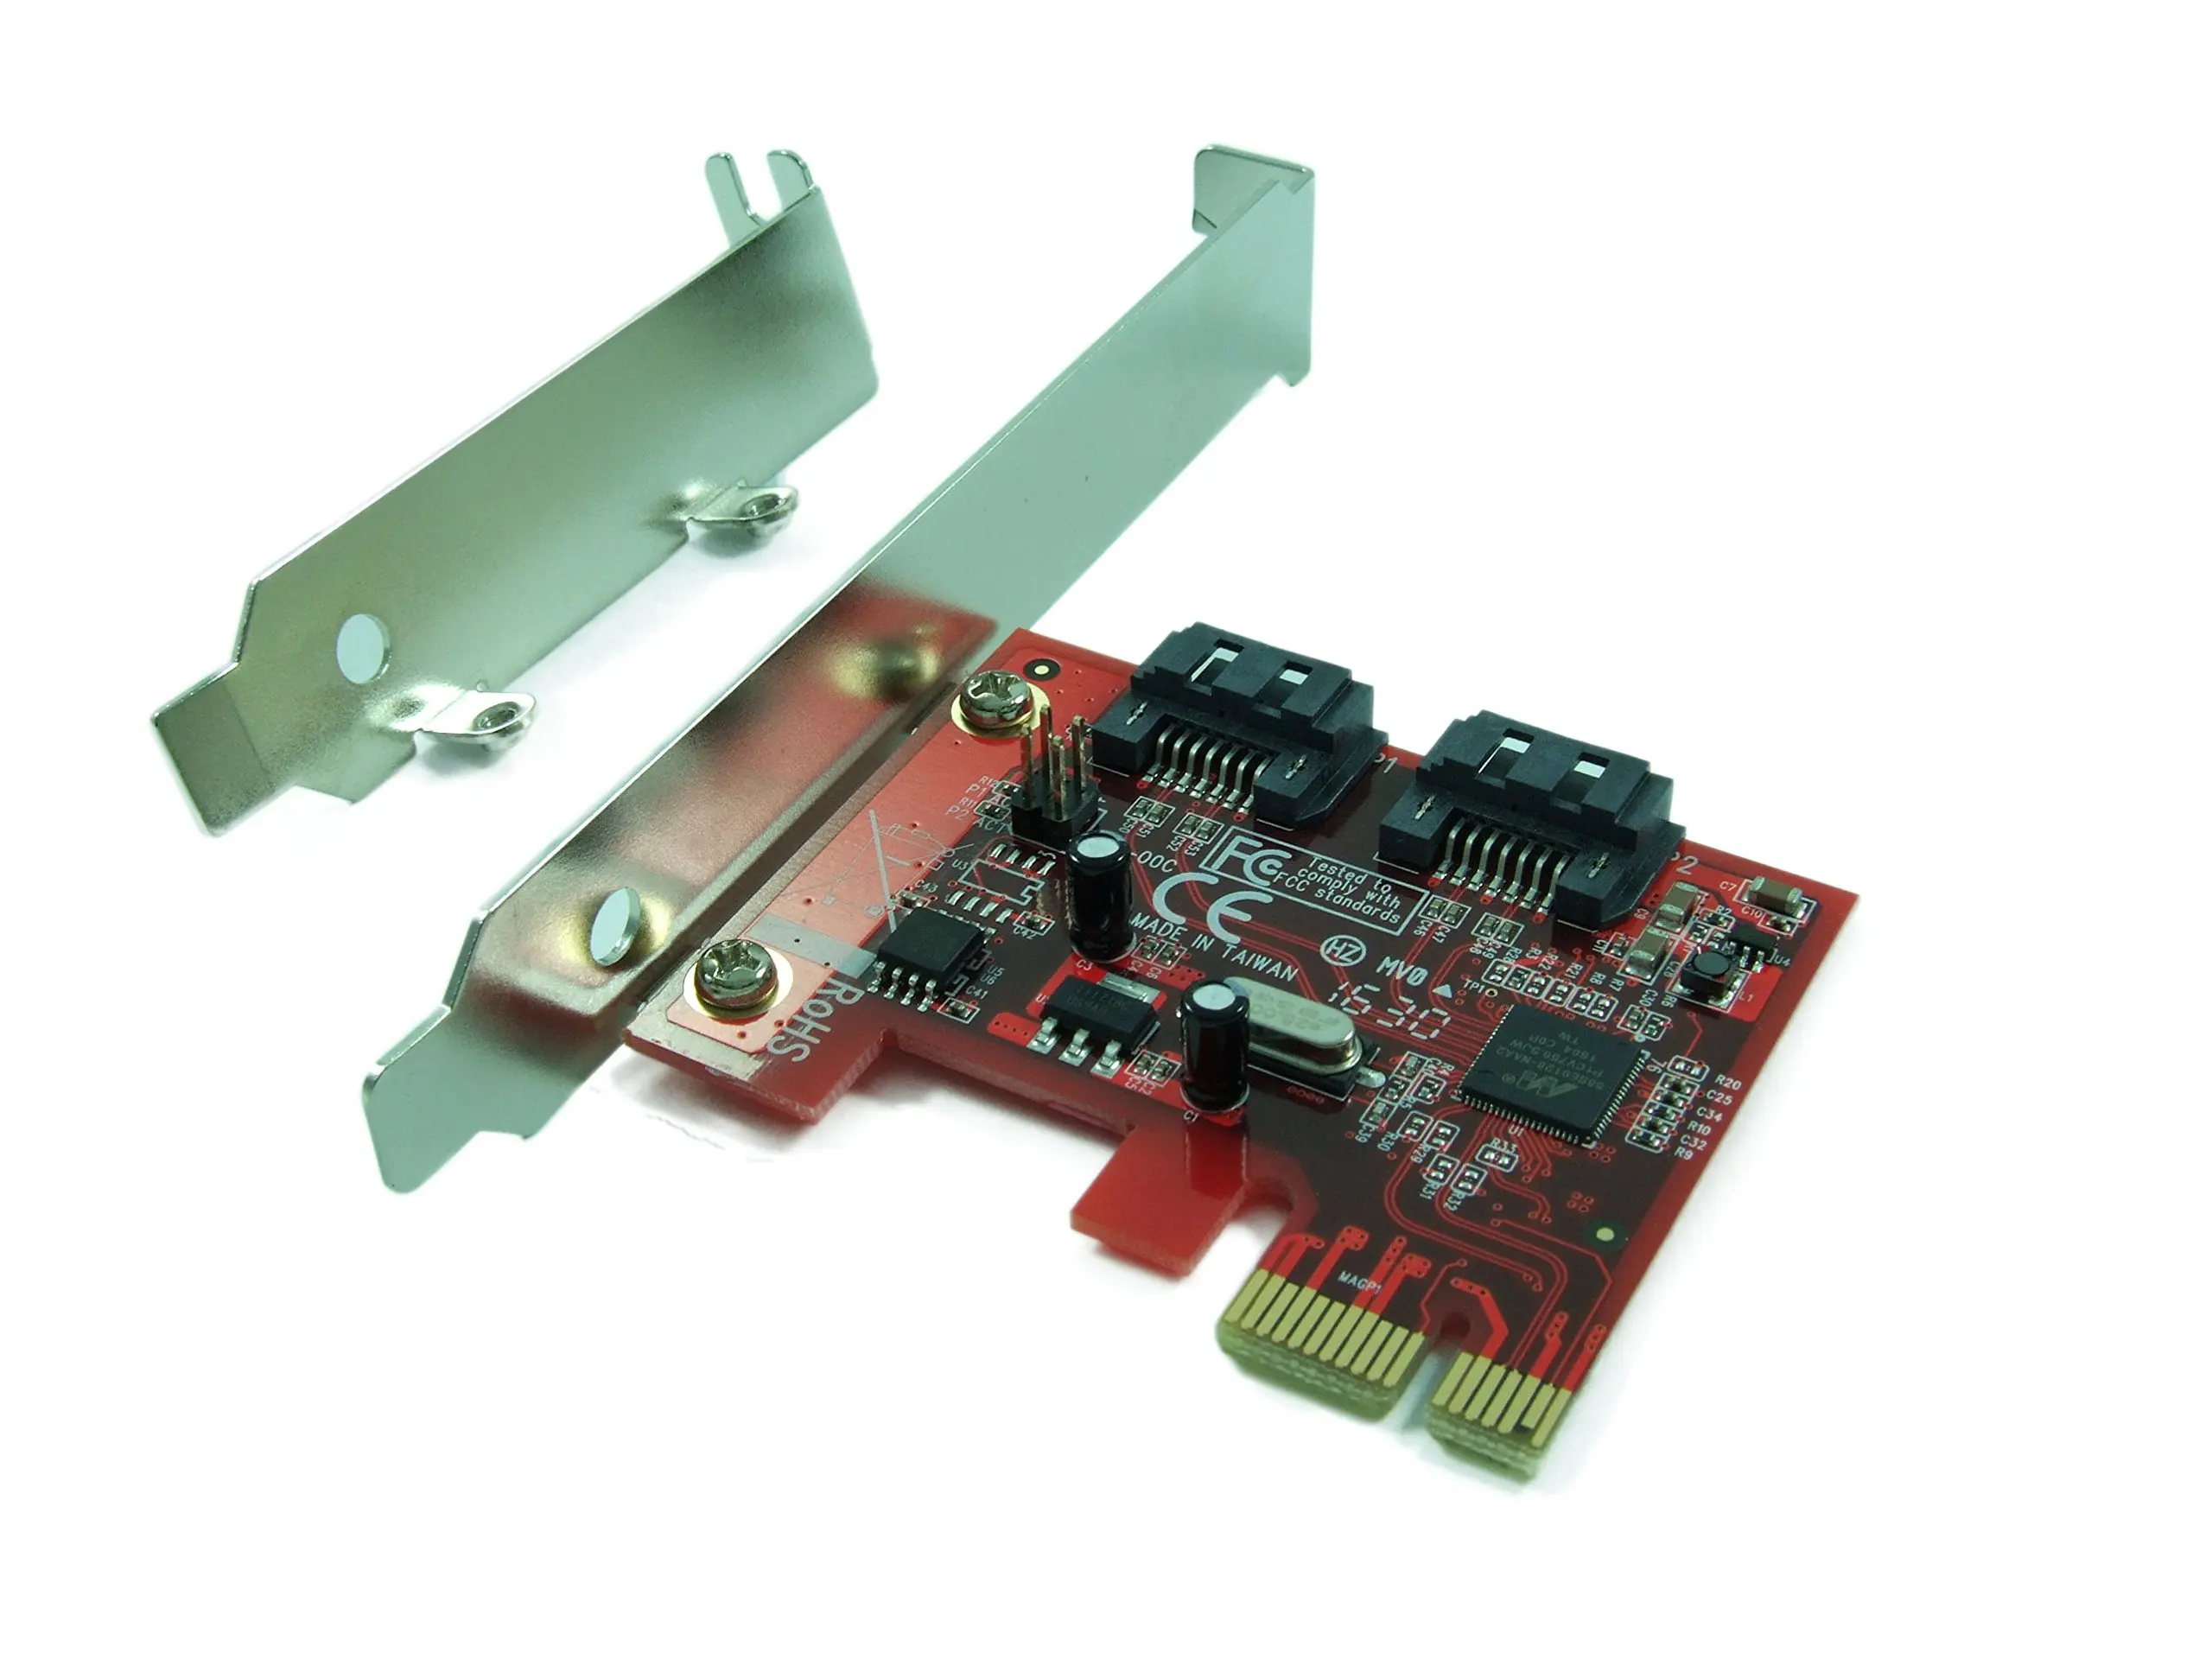 Pci e 2.0 x1. PCI SATA 3 контроллер. SATA контроллер PCI-E x1. Orient PCI*PCI - Express Controller Card. Контроллер 88se6111.